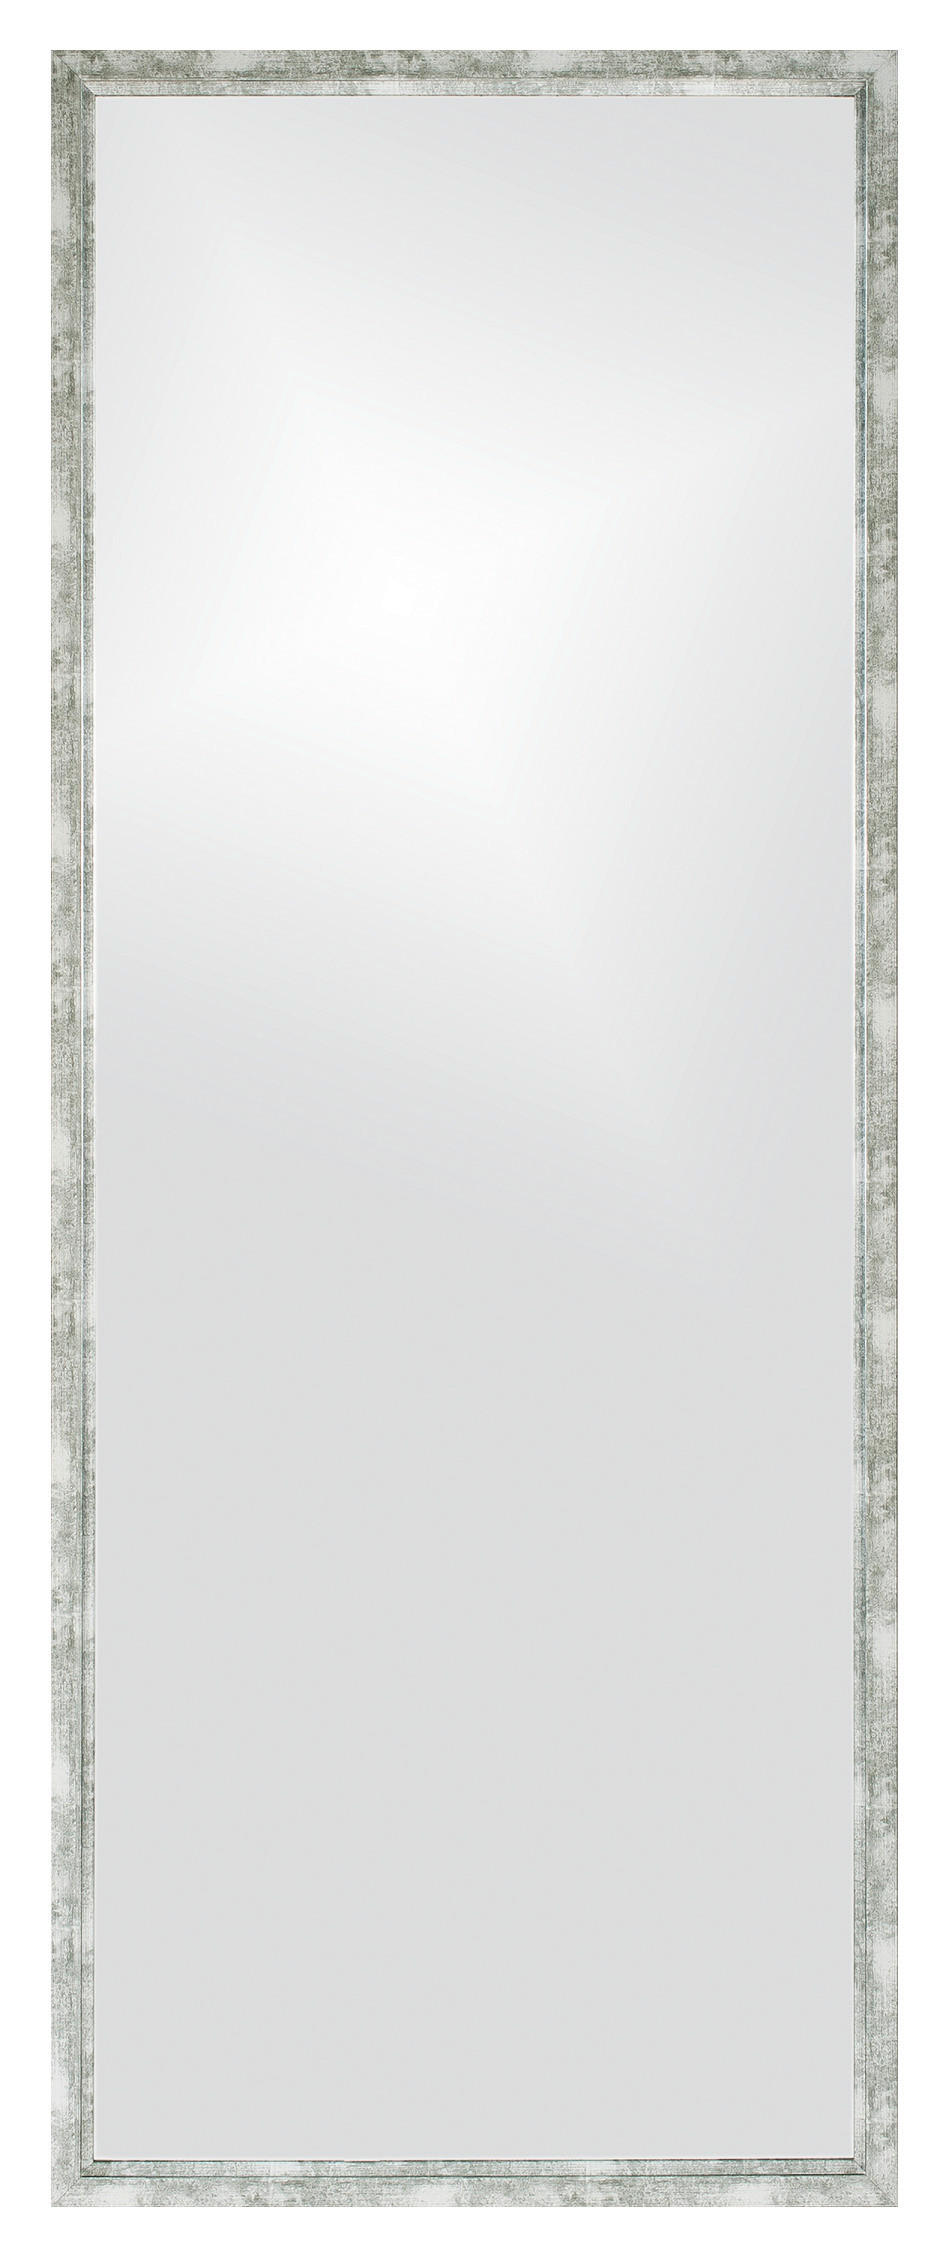 Xora NÁSTĚNNÉ ZRCADLO 70/180/3 cm - barvy stříbra